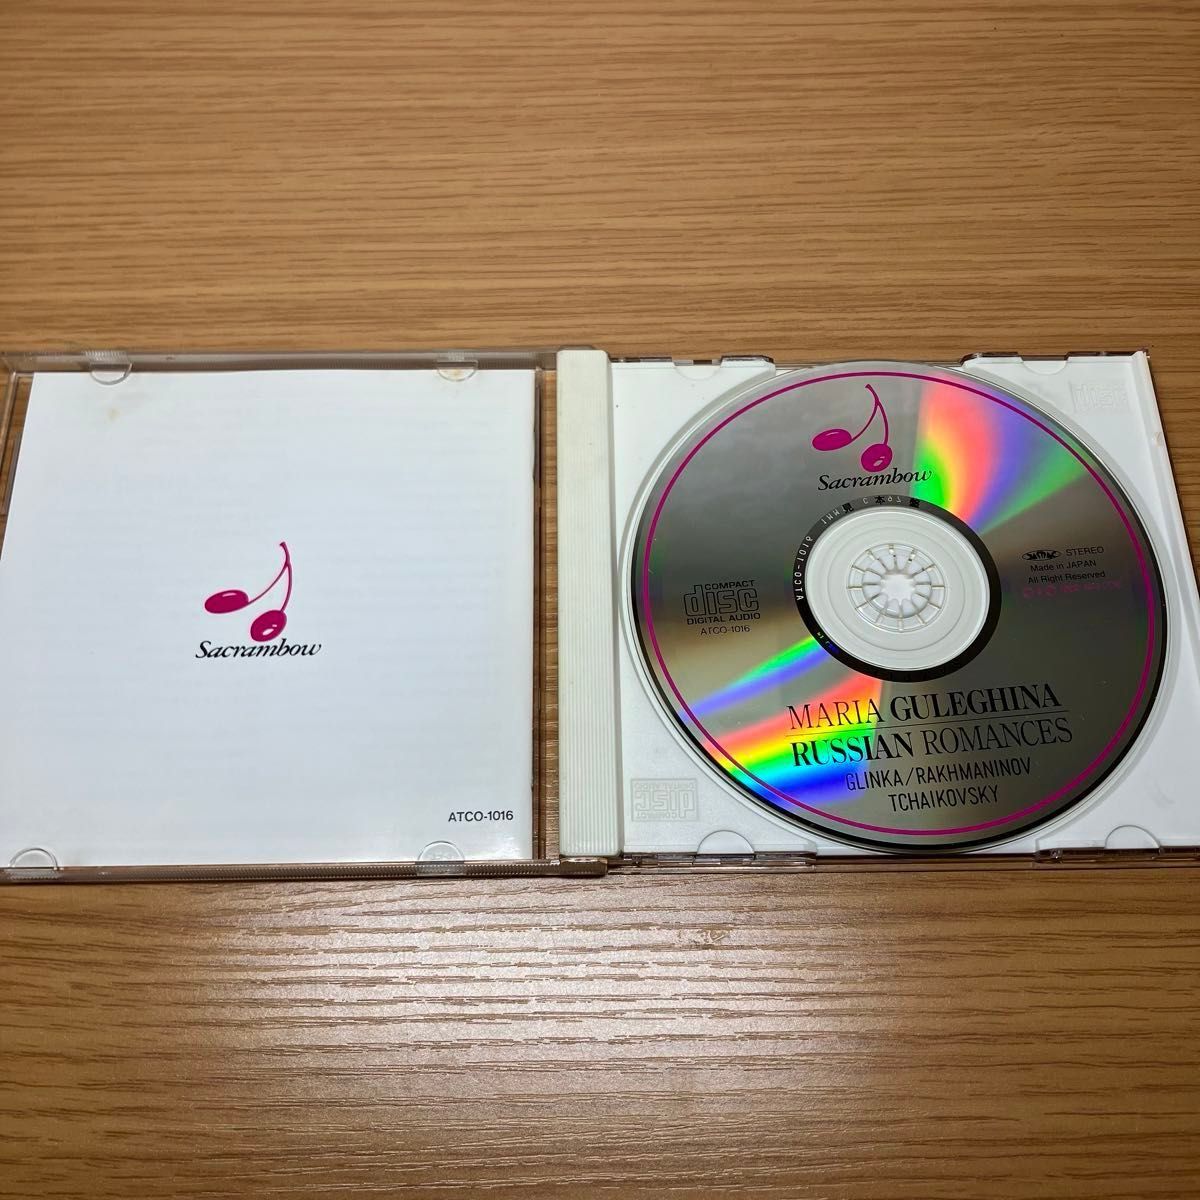  マリア・グレギーナ / ロシア ロマンス集 音楽CD サンプル盤